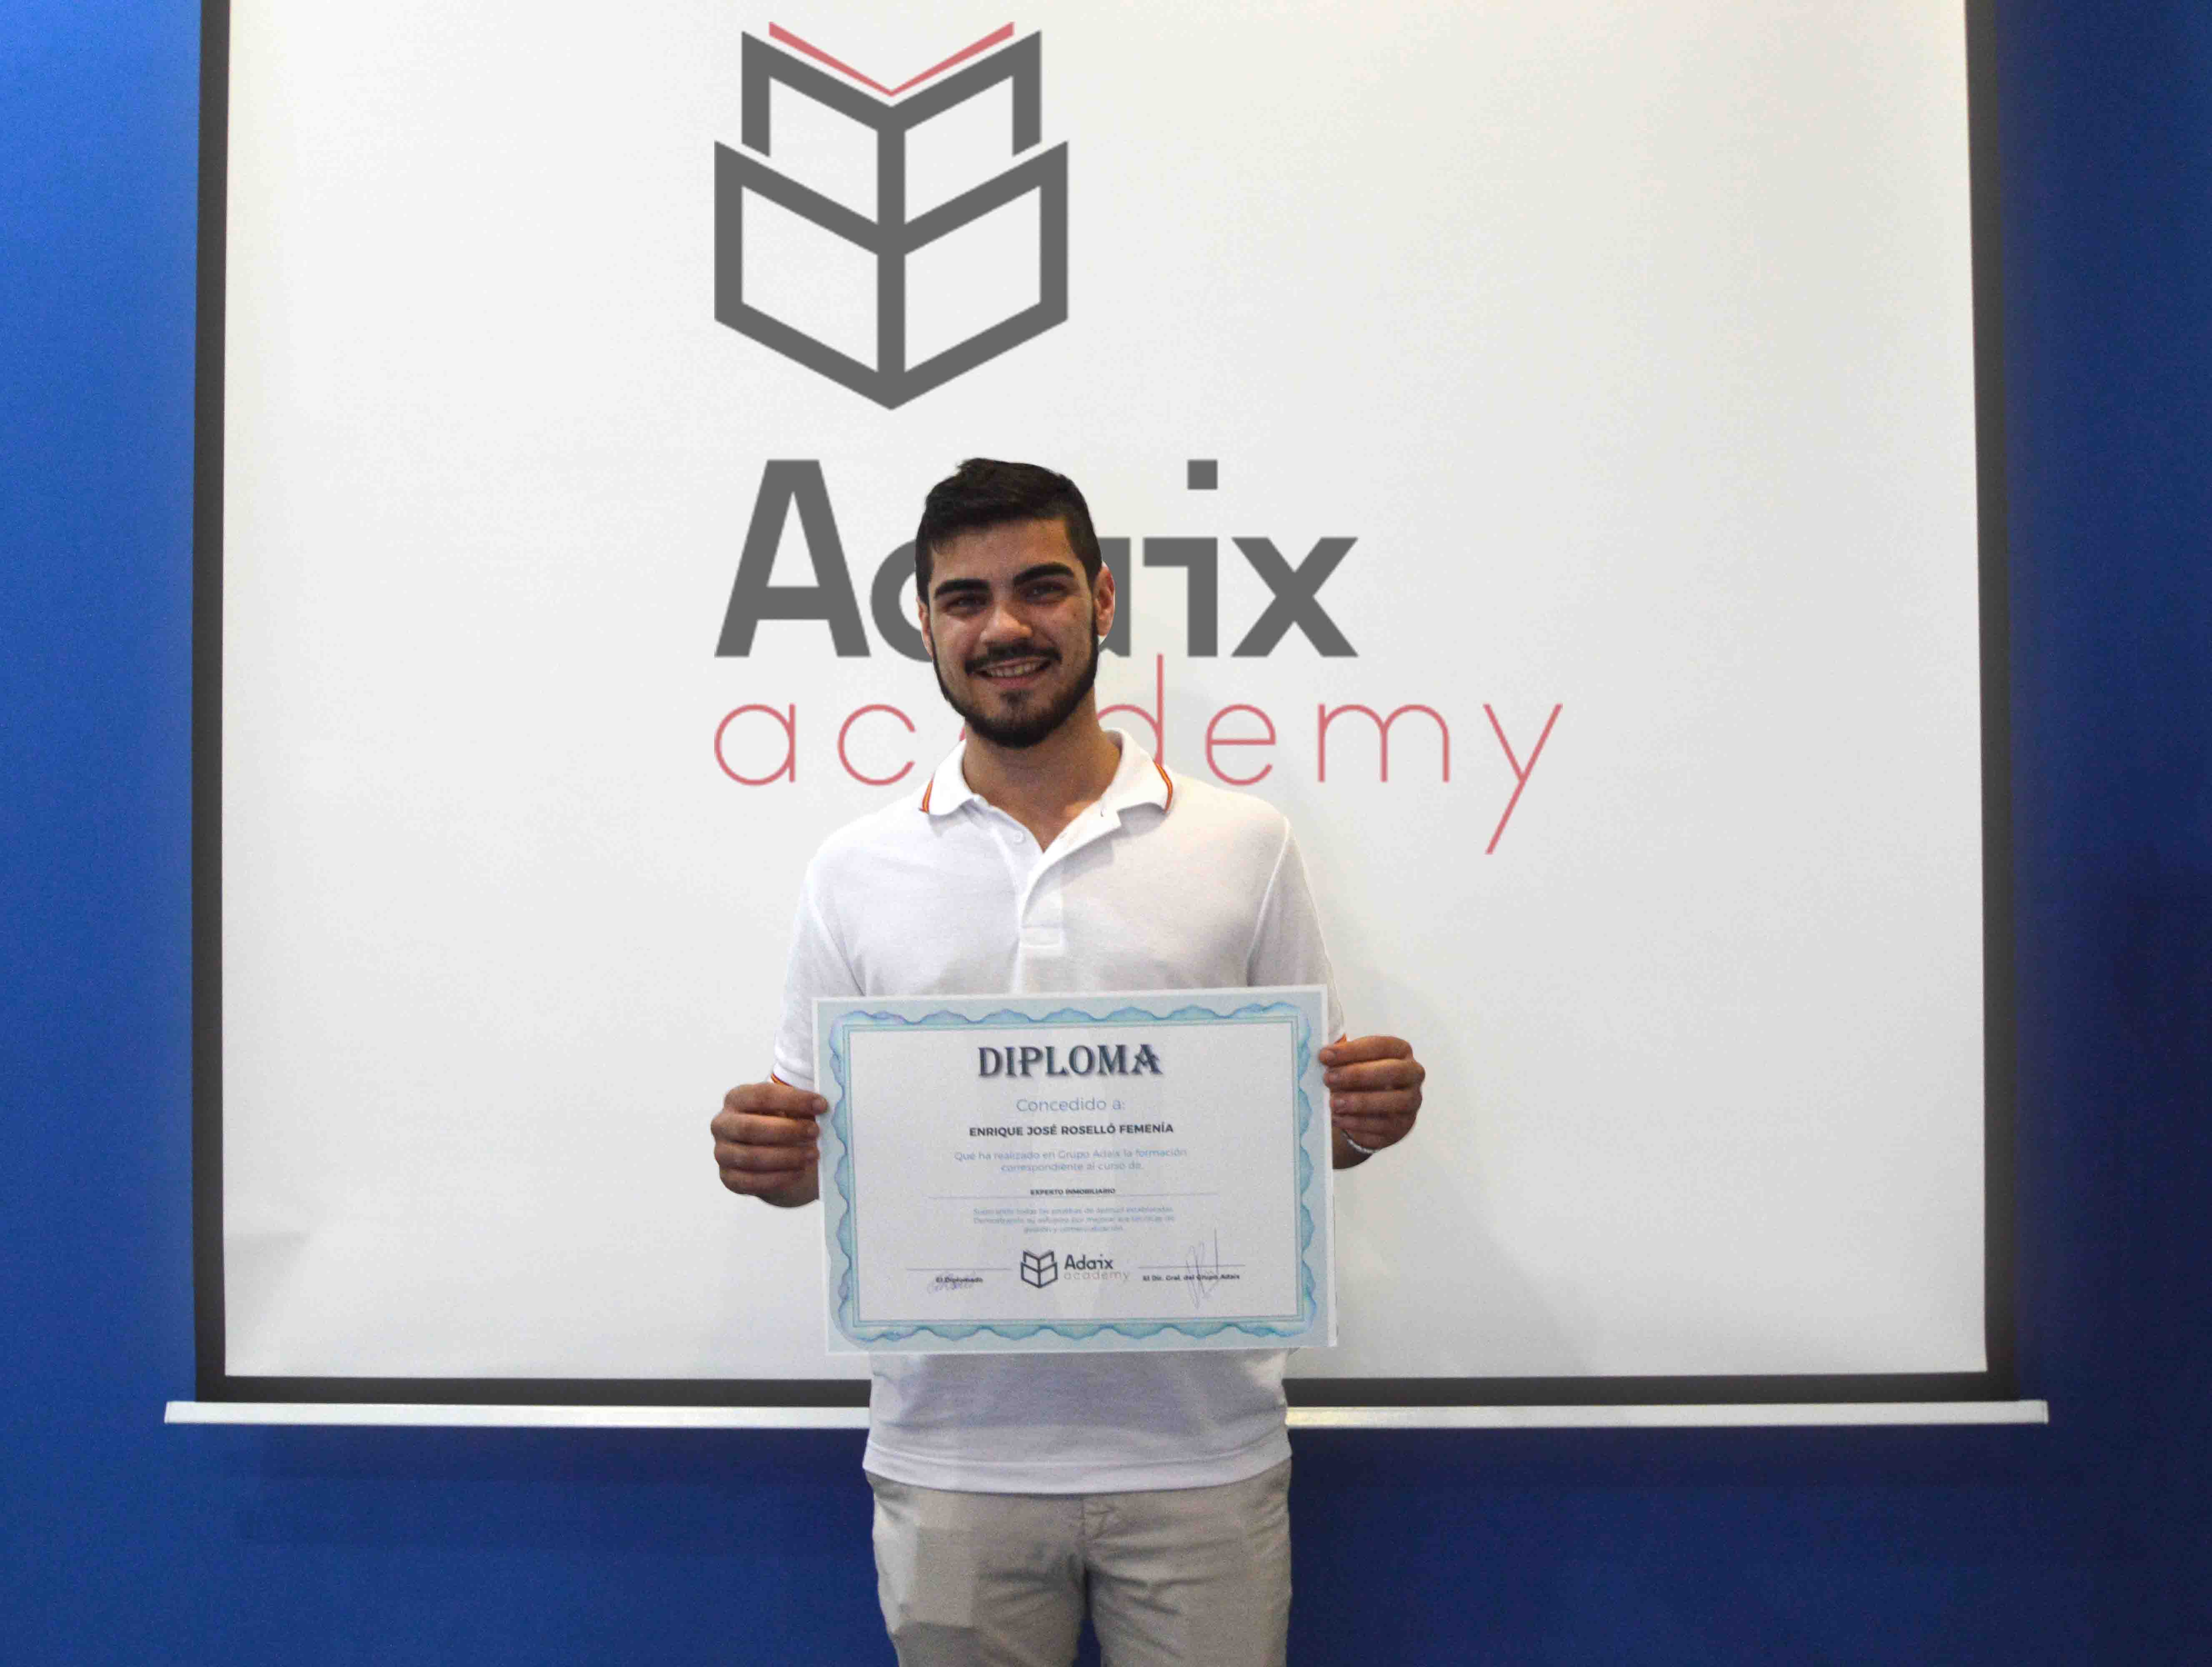 Adaix Academy